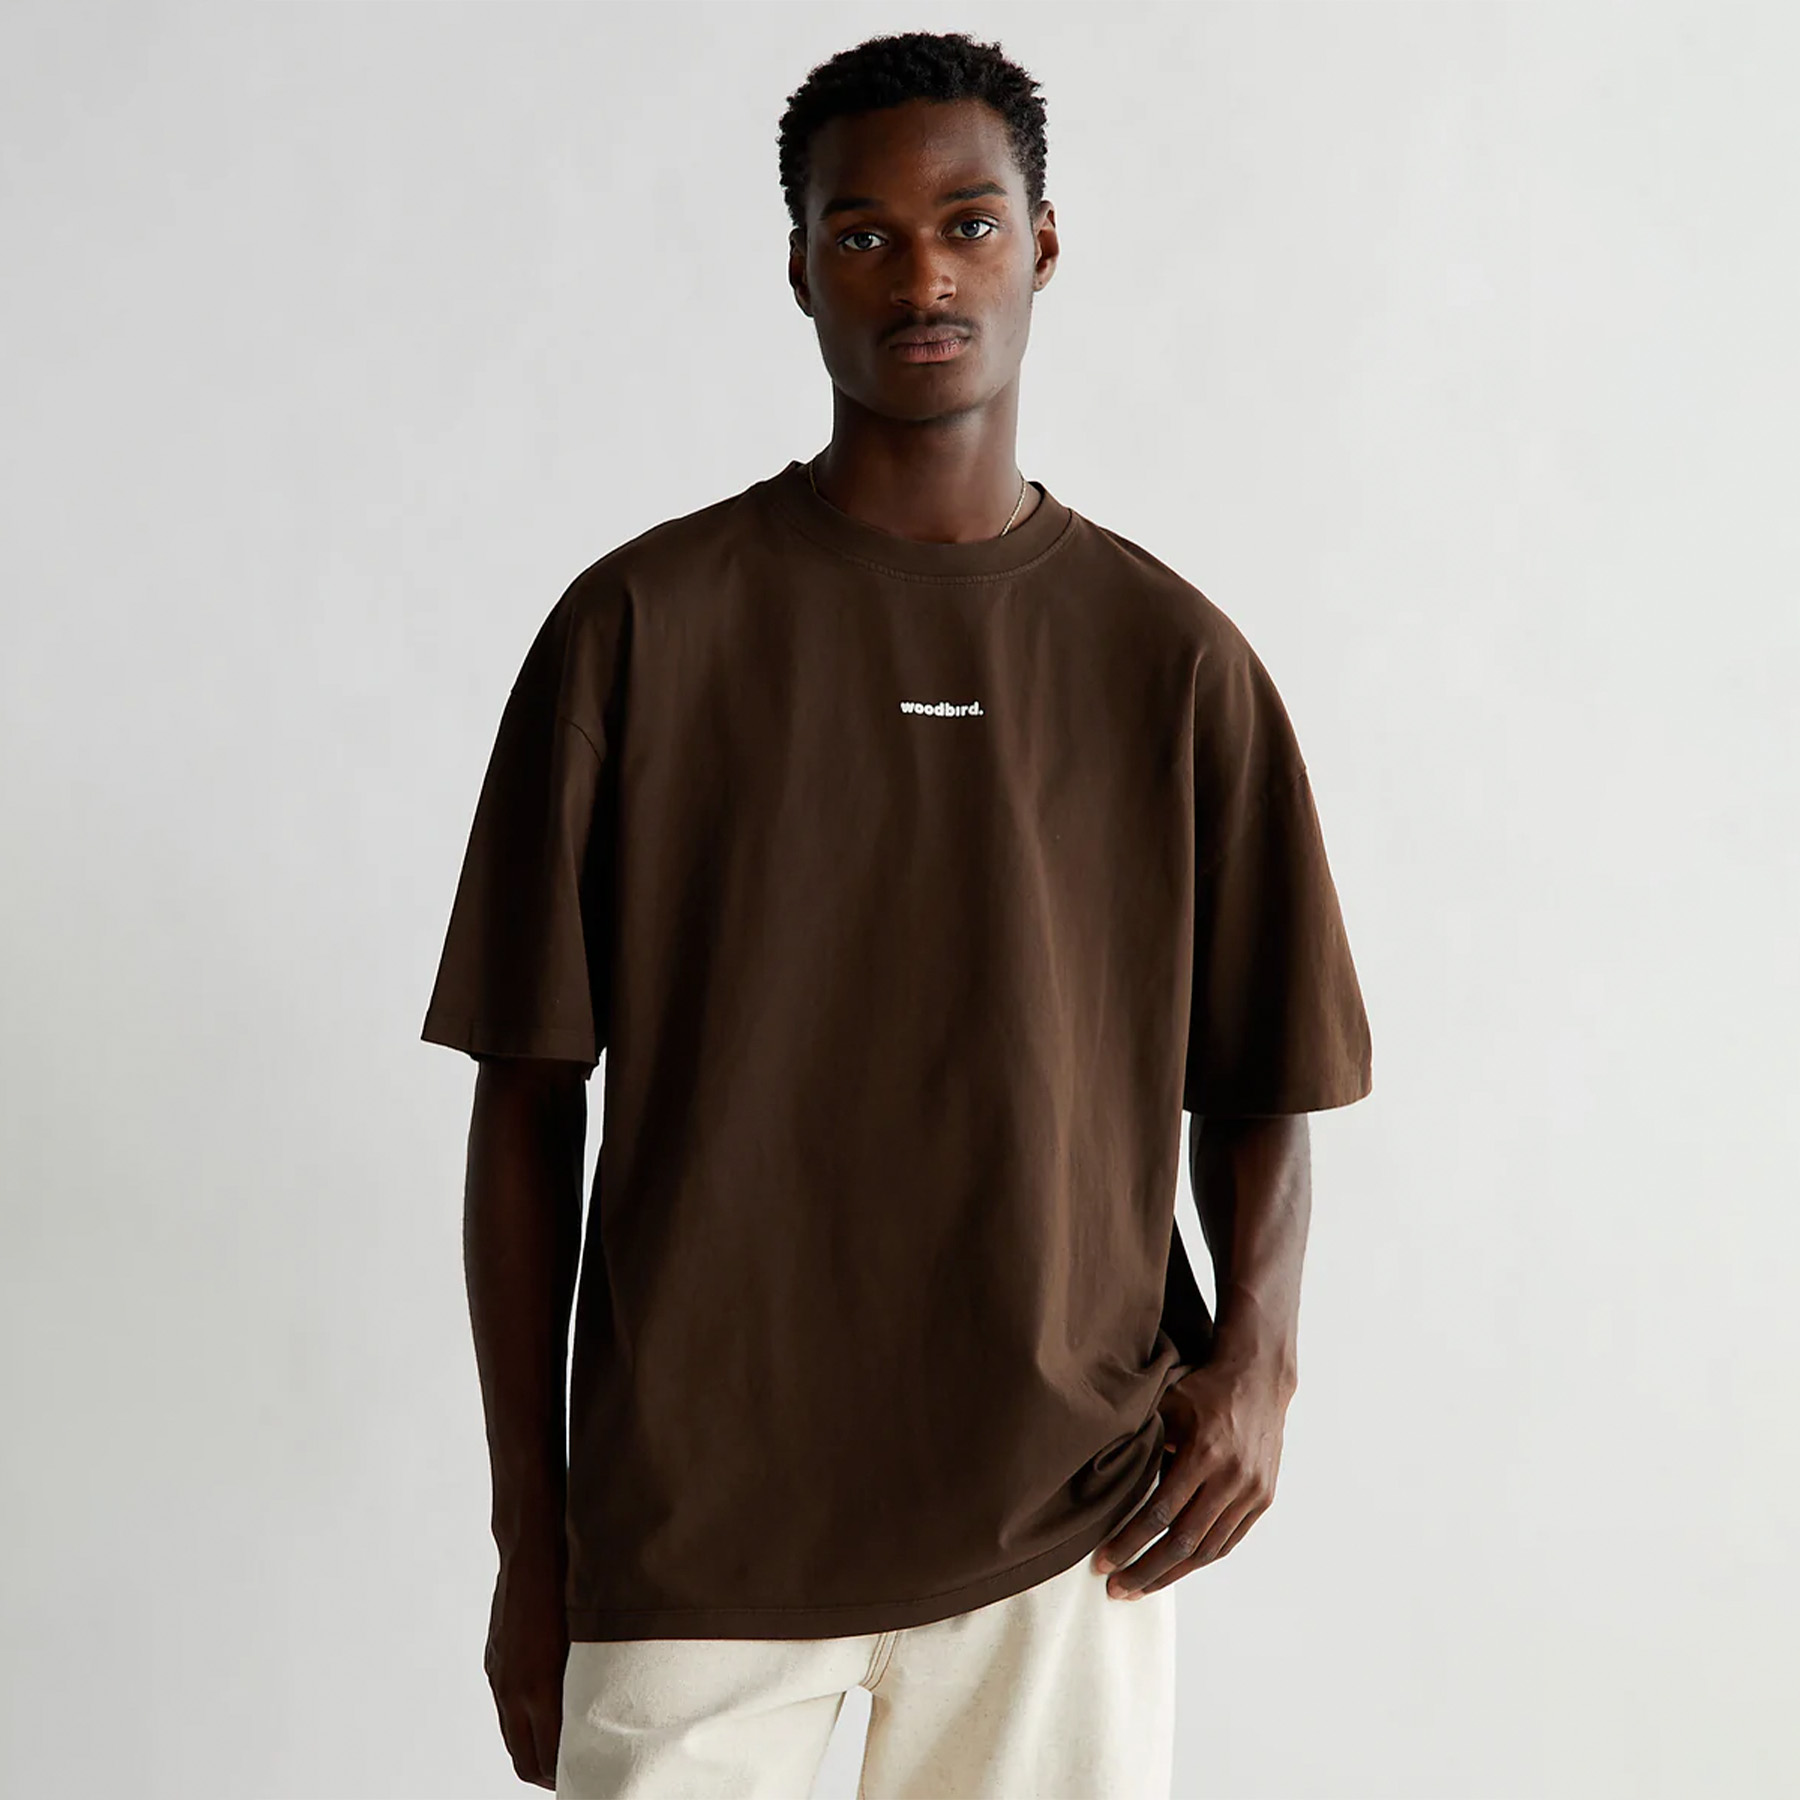 Woodbird - Bose mock tee - T-shirts til mænd - Brun - XL